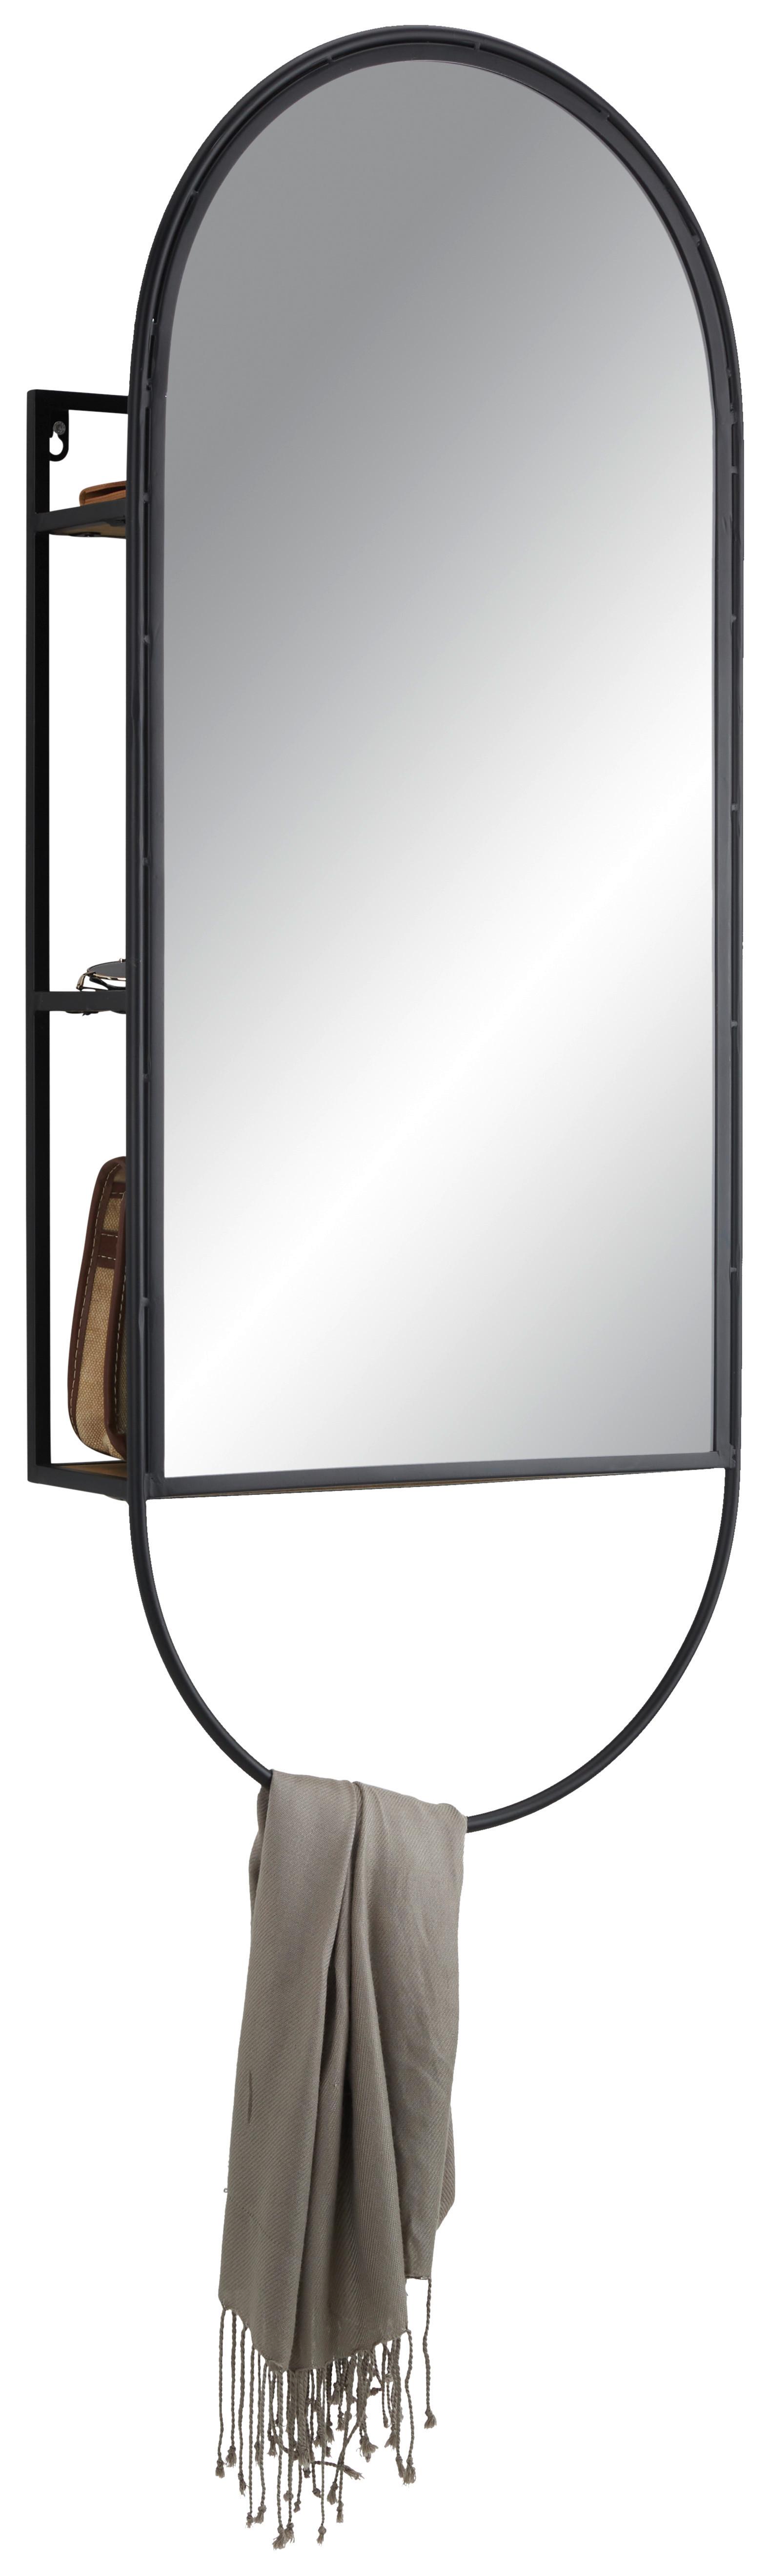 Zrcadlo Mira -Trend- - černá, Lifestyle, kov/dřevo (40/100/12cm) - Premium Living